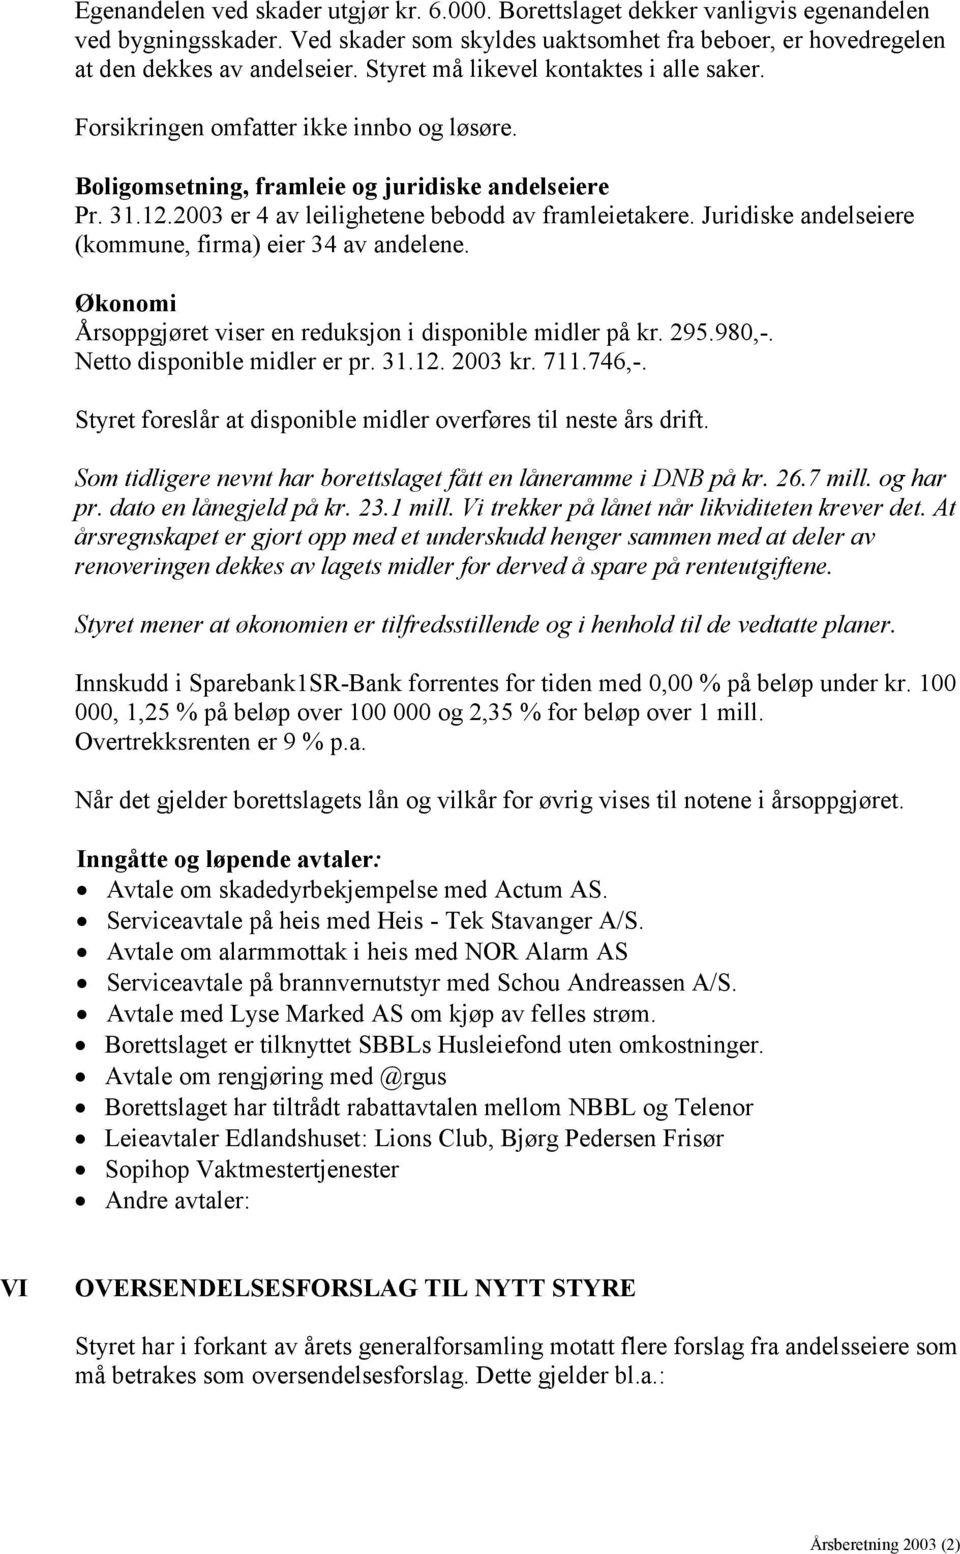 Juridiske andelseiere (kommune, firma) eier 34 av andelene. Økonomi Årsoppgjøret viser en reduksjon i disponible midler på kr. 295.980,-. Netto disponible midler er pr. 31.12. 2003 kr. 711.746,-.